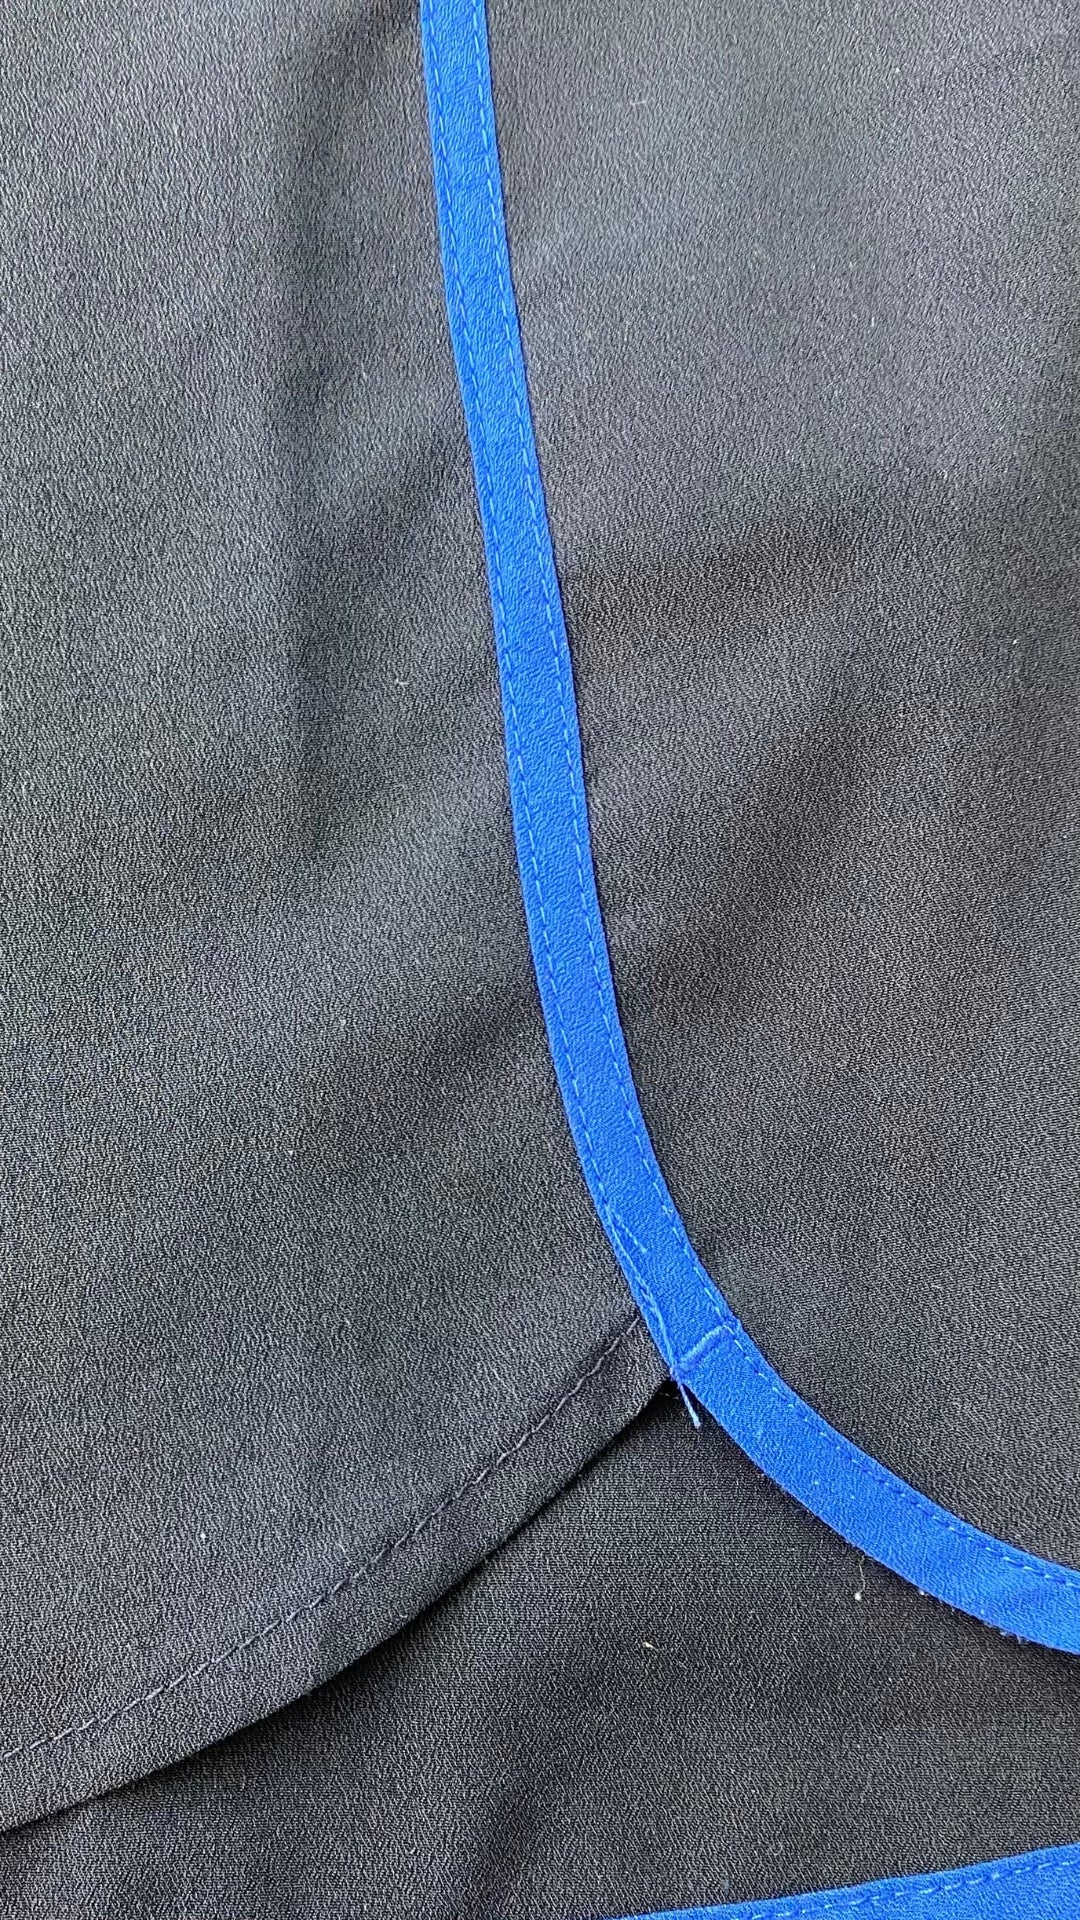 Camisole chic marine avec liséré de bleu azur, Banana Republic, taille medium. Vue du liséré bleu azur de près.